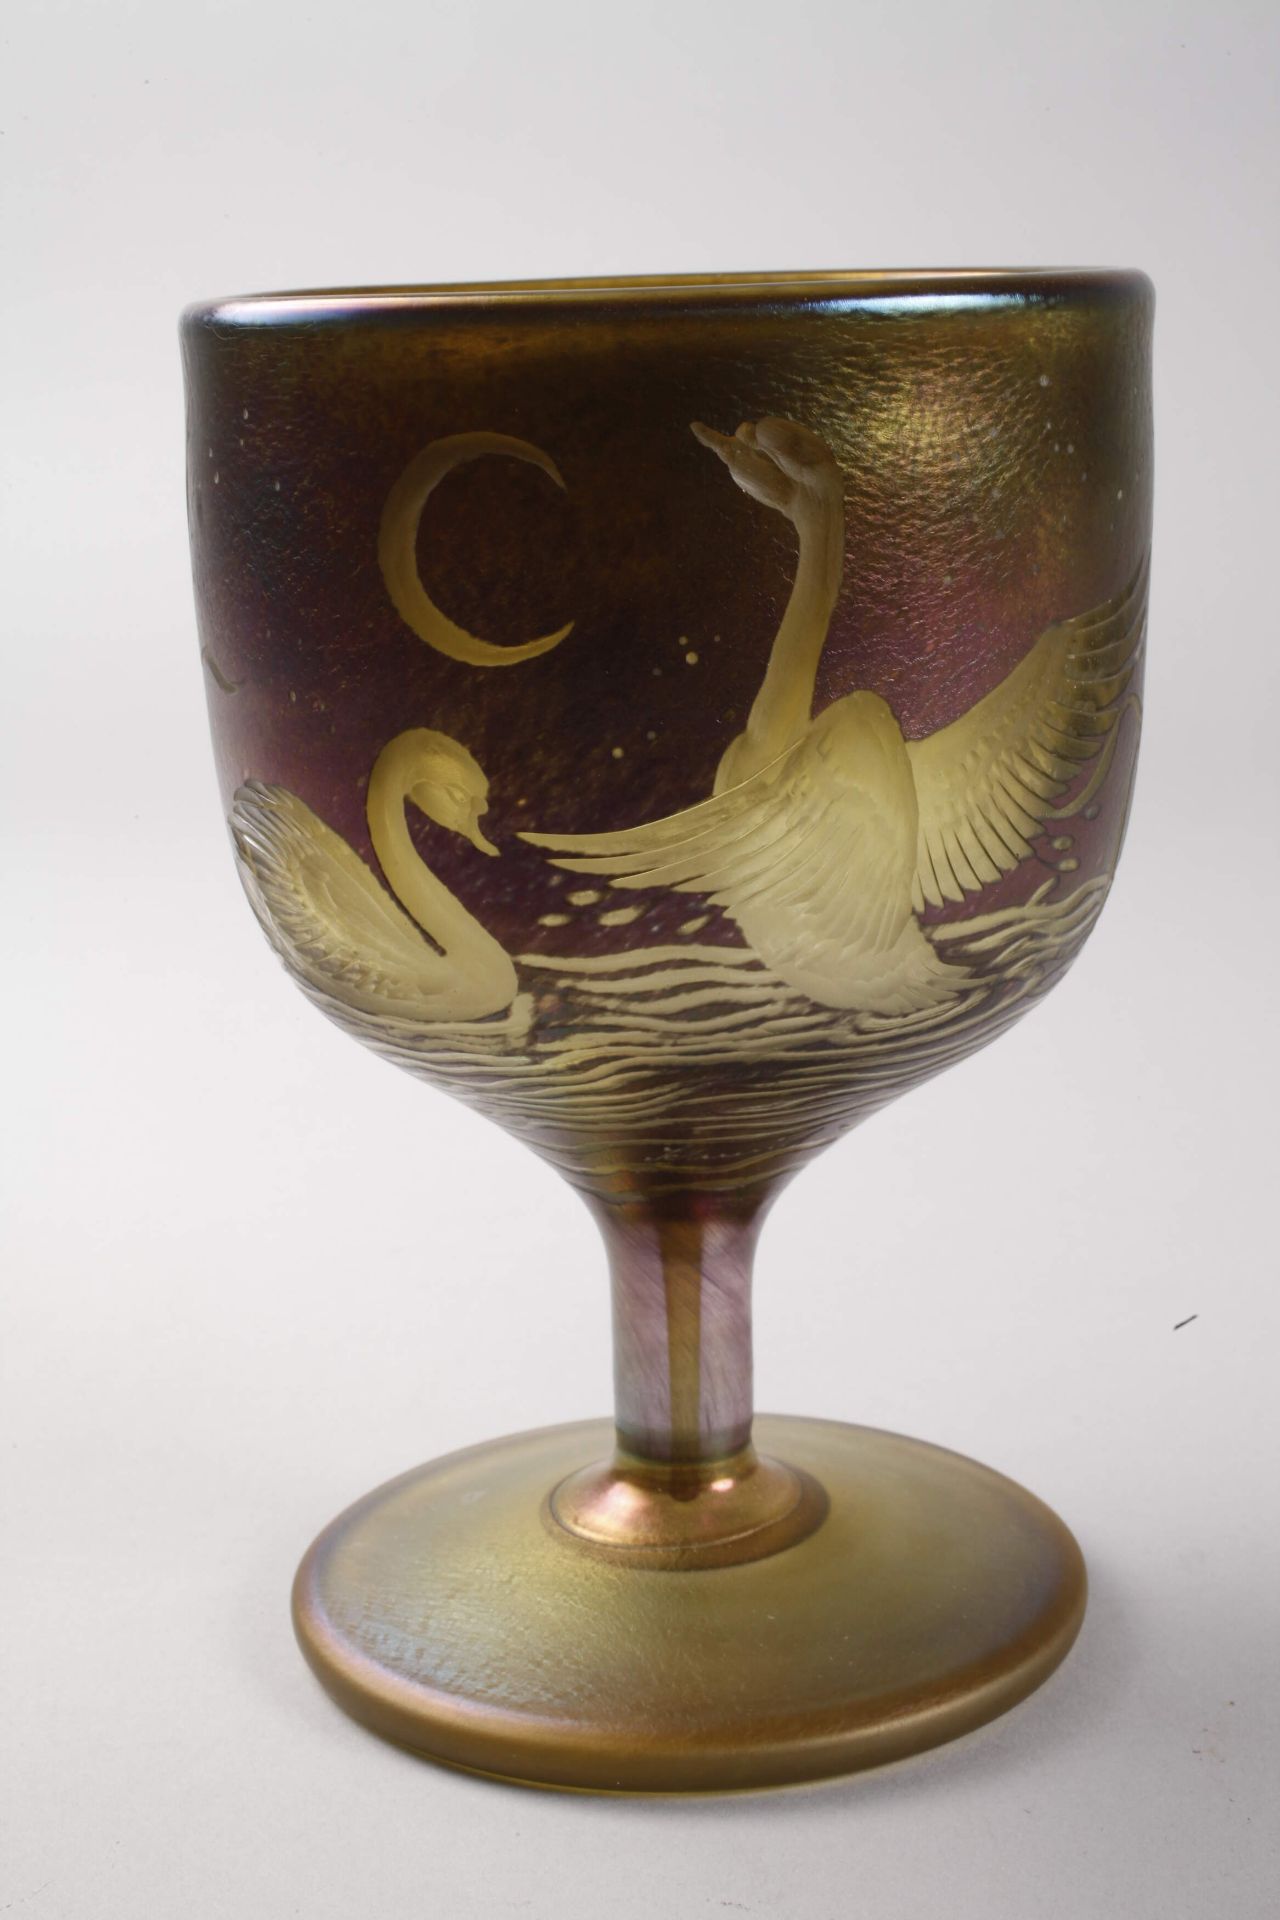 Goblet glass with swan motifsSchmid-Jacquet Goblet glass with swan motifs - Image 2 of 6